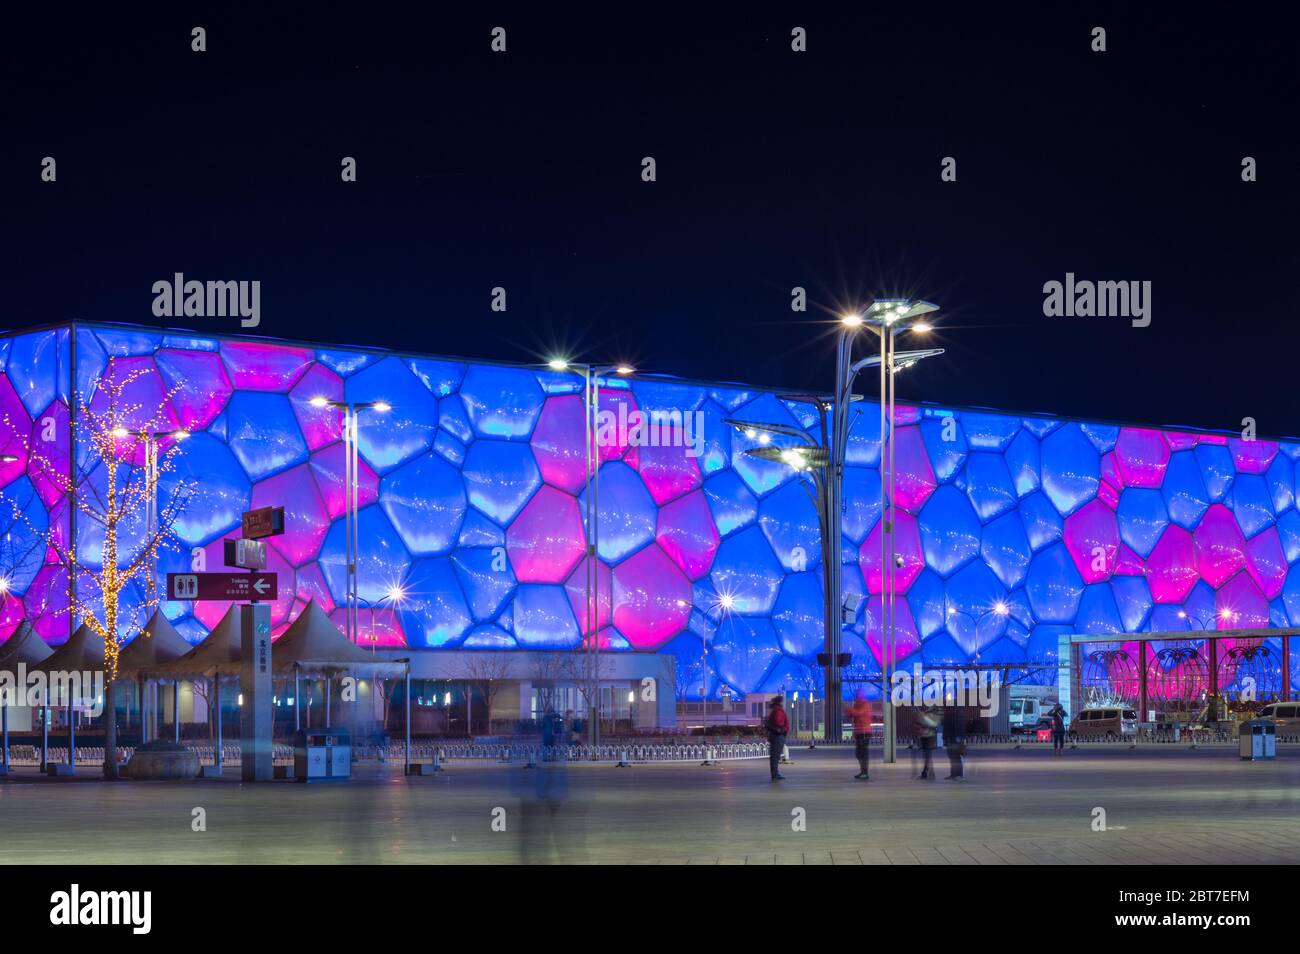 BEIJING / CHINA - 7 de febrero de 2015: Vista nocturna del Centro Nacional de Acuaticos de Beijing (cubo de agua) en el Parque Olímpico de Beijing, lugar de natación competencia Foto de stock